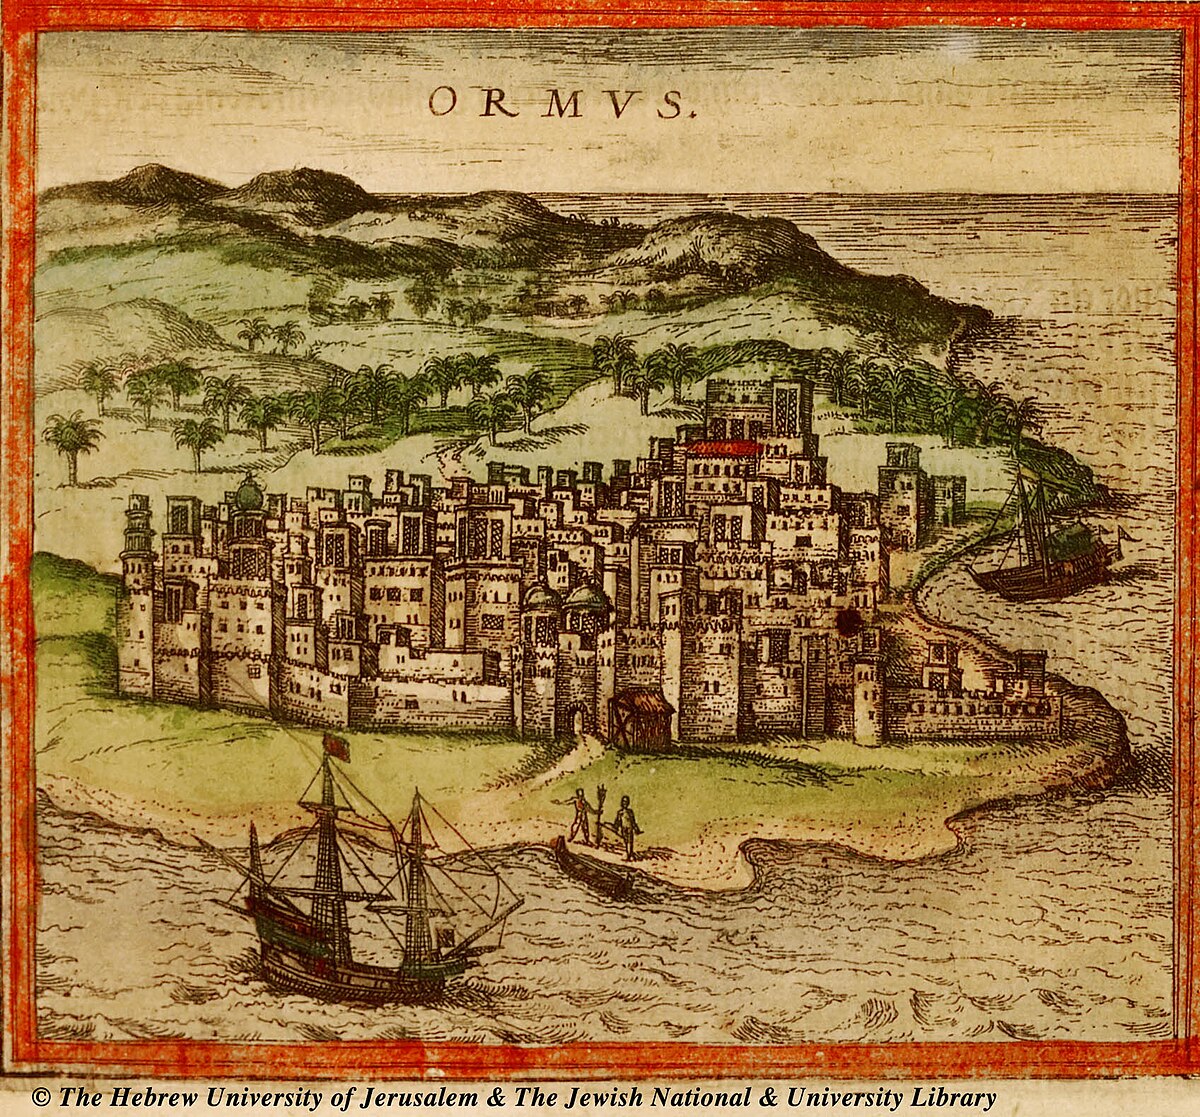 Οθωμανικές ναυτικές αποστολές στον Ινδικό Ωκεανό